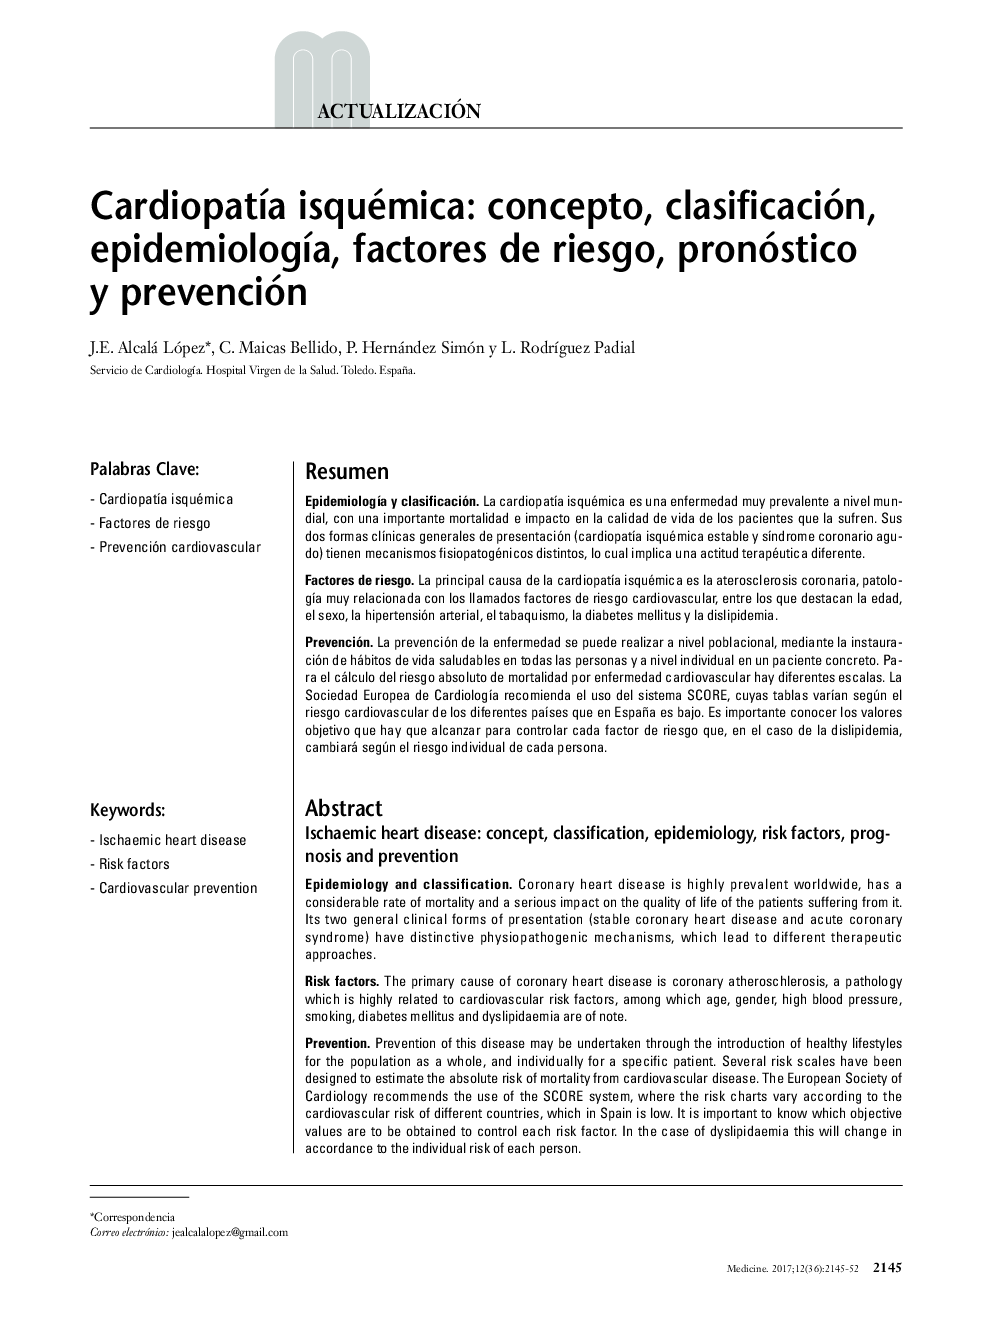 CardiopatÃ­a isquémica: concepto, clasificación, epidemiologÃ­a, factores de riesgo, pronóstico y prevención